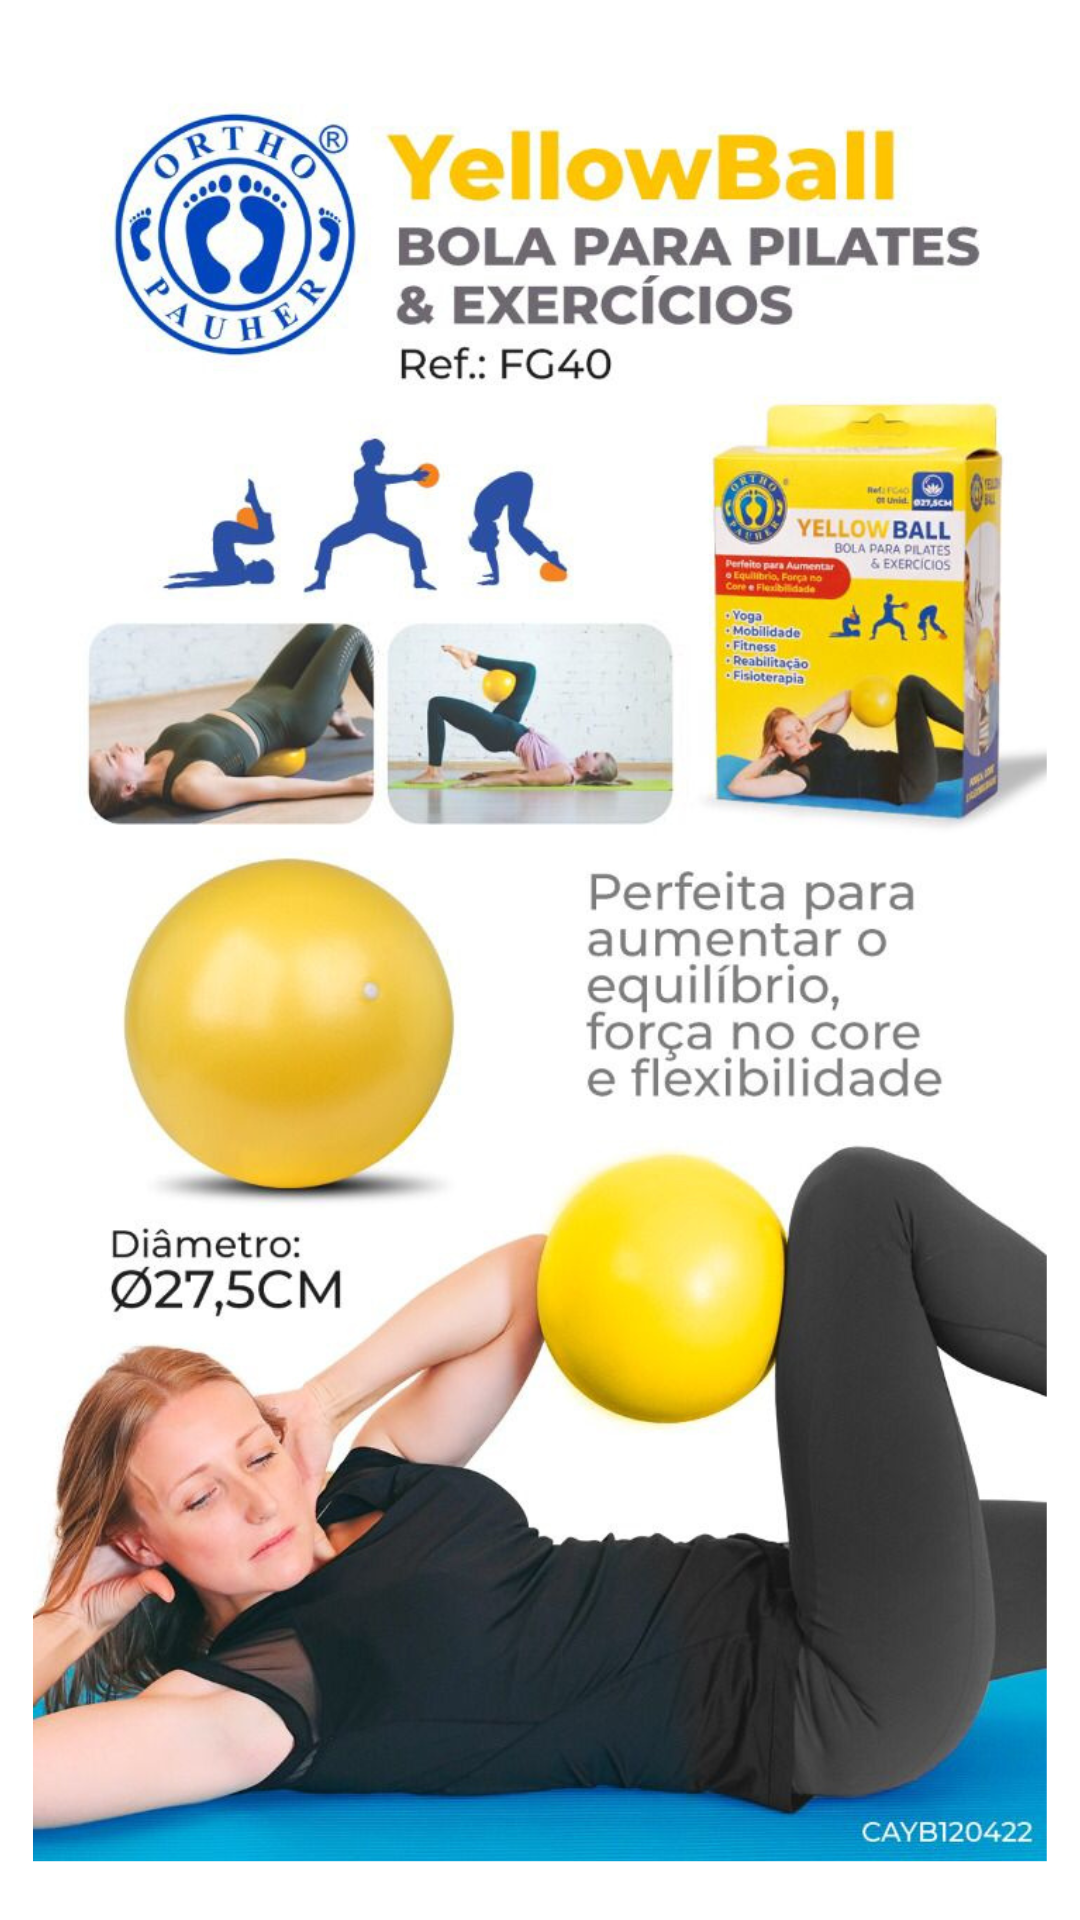 Yellow Ball - Bola para Pilates e Exercícios - Vital Solution